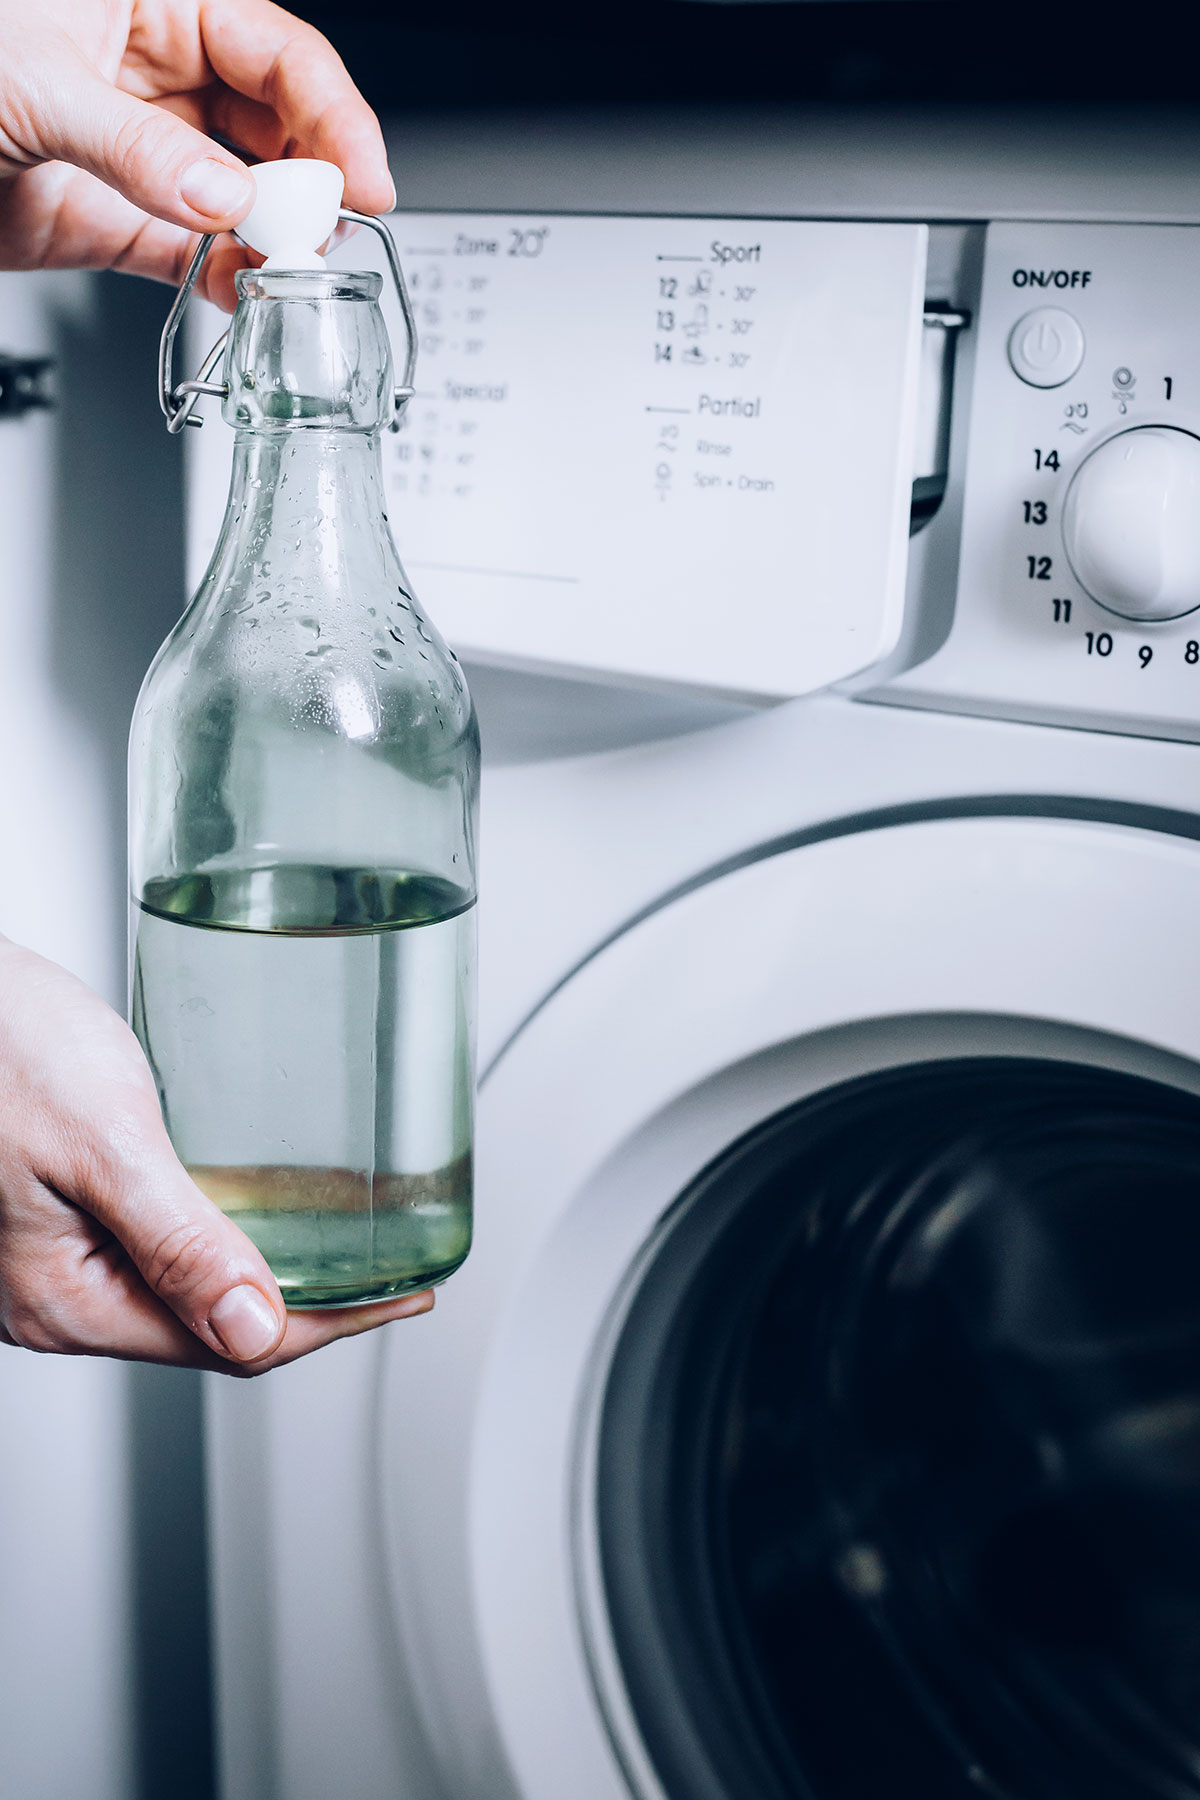 Как почистить от запаха стиральную машинку автомат